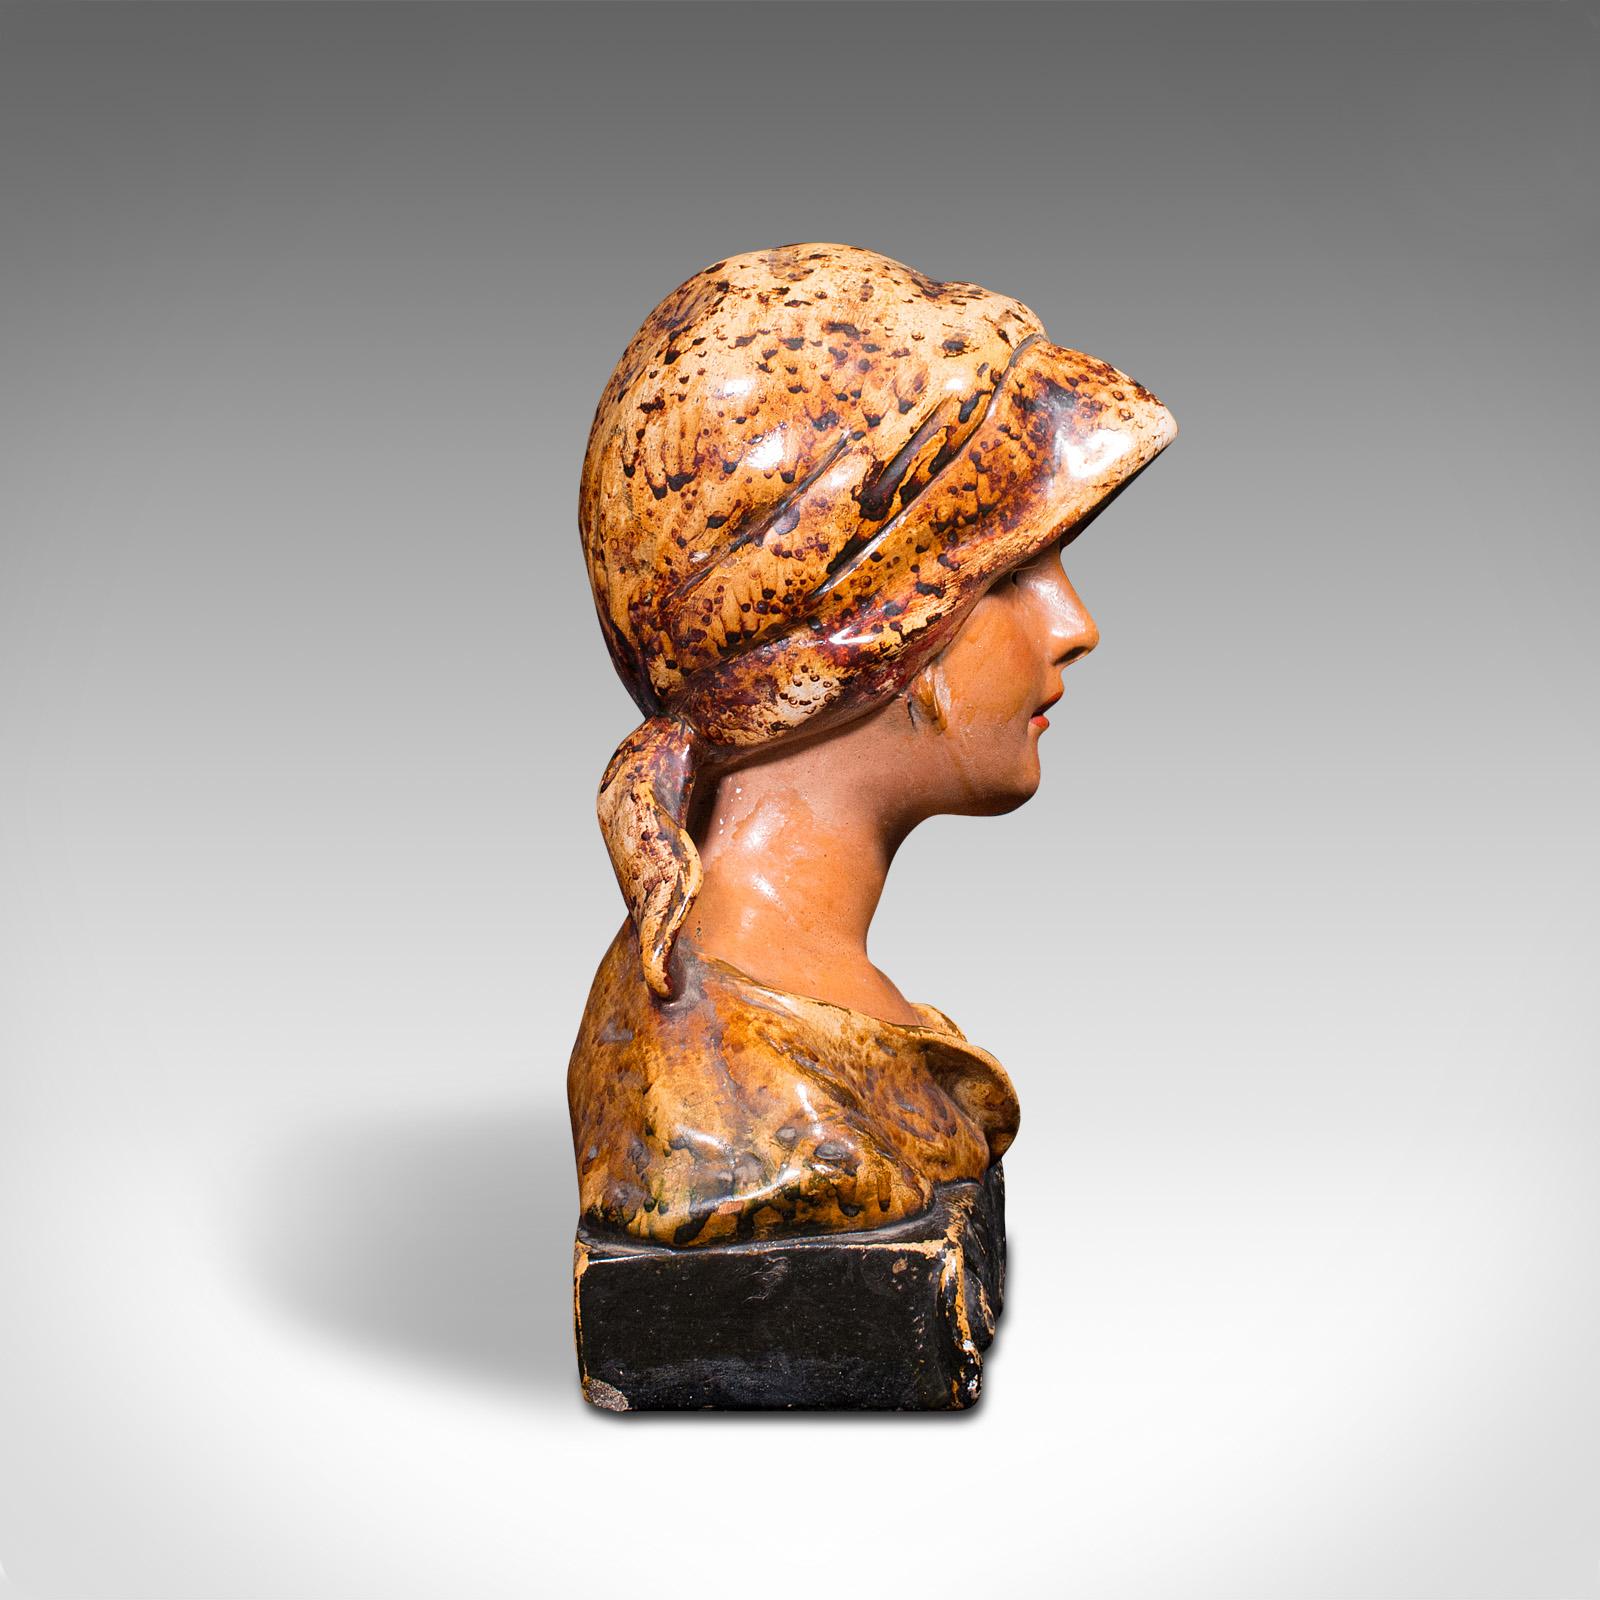 Il s'agit d'un buste de portrait antique. Figure féminine décorative française en plâtre, datant de la fin de la période victorienne, vers 1900.

Une jeune femme parisienne de la fin du siècle, dans le style Art nouveau
Présente une patine